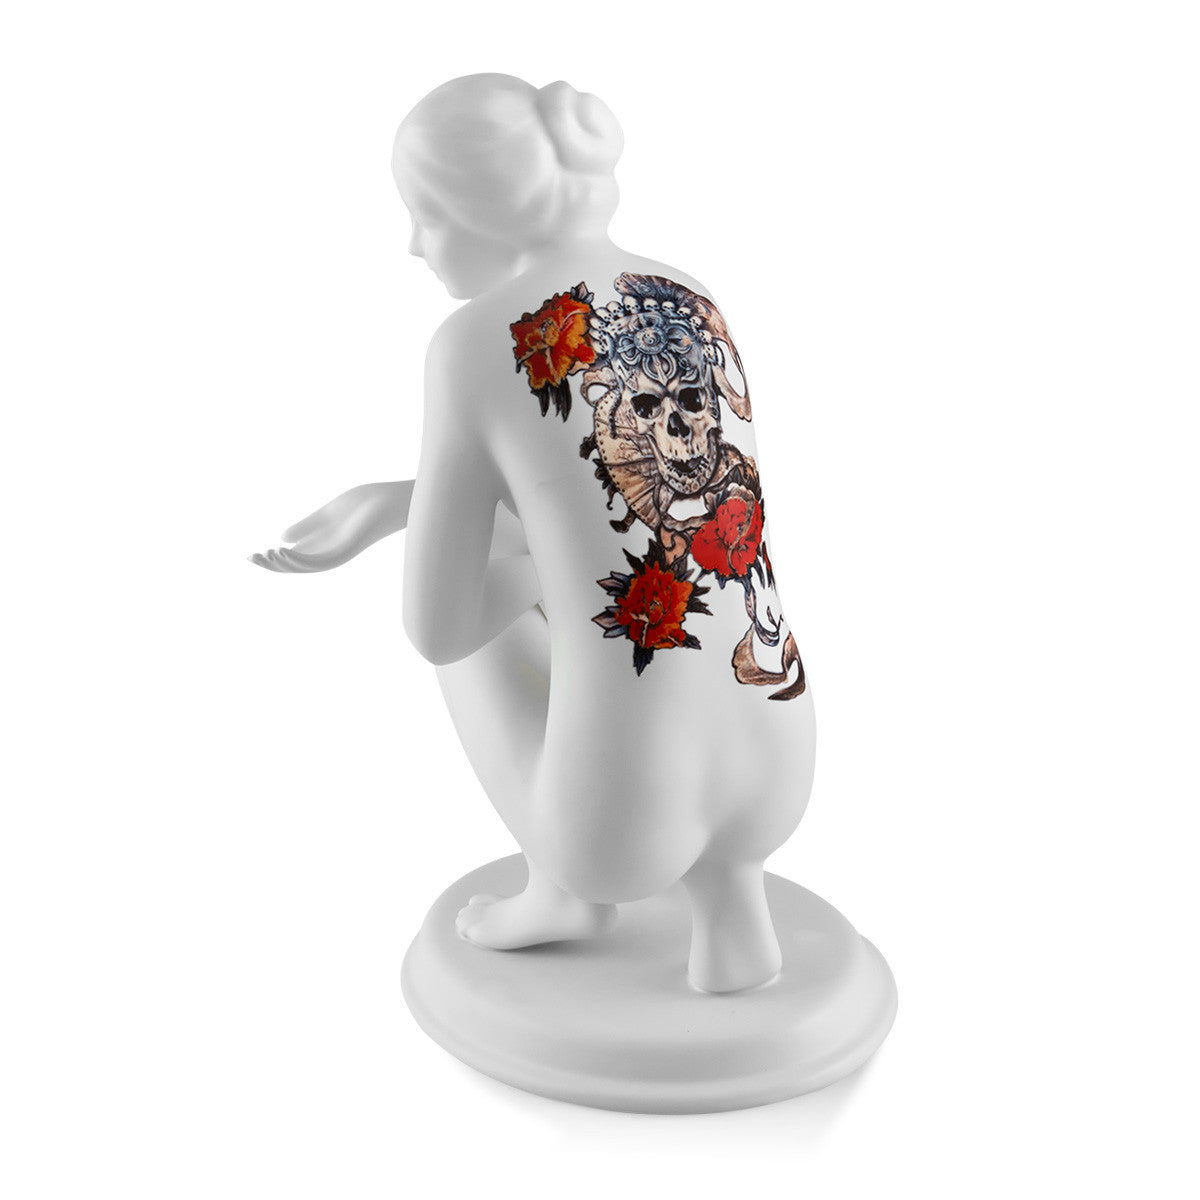 Statua in ceramica con tatuaggio, statuine per arredare con stile moderno e contemporaneo